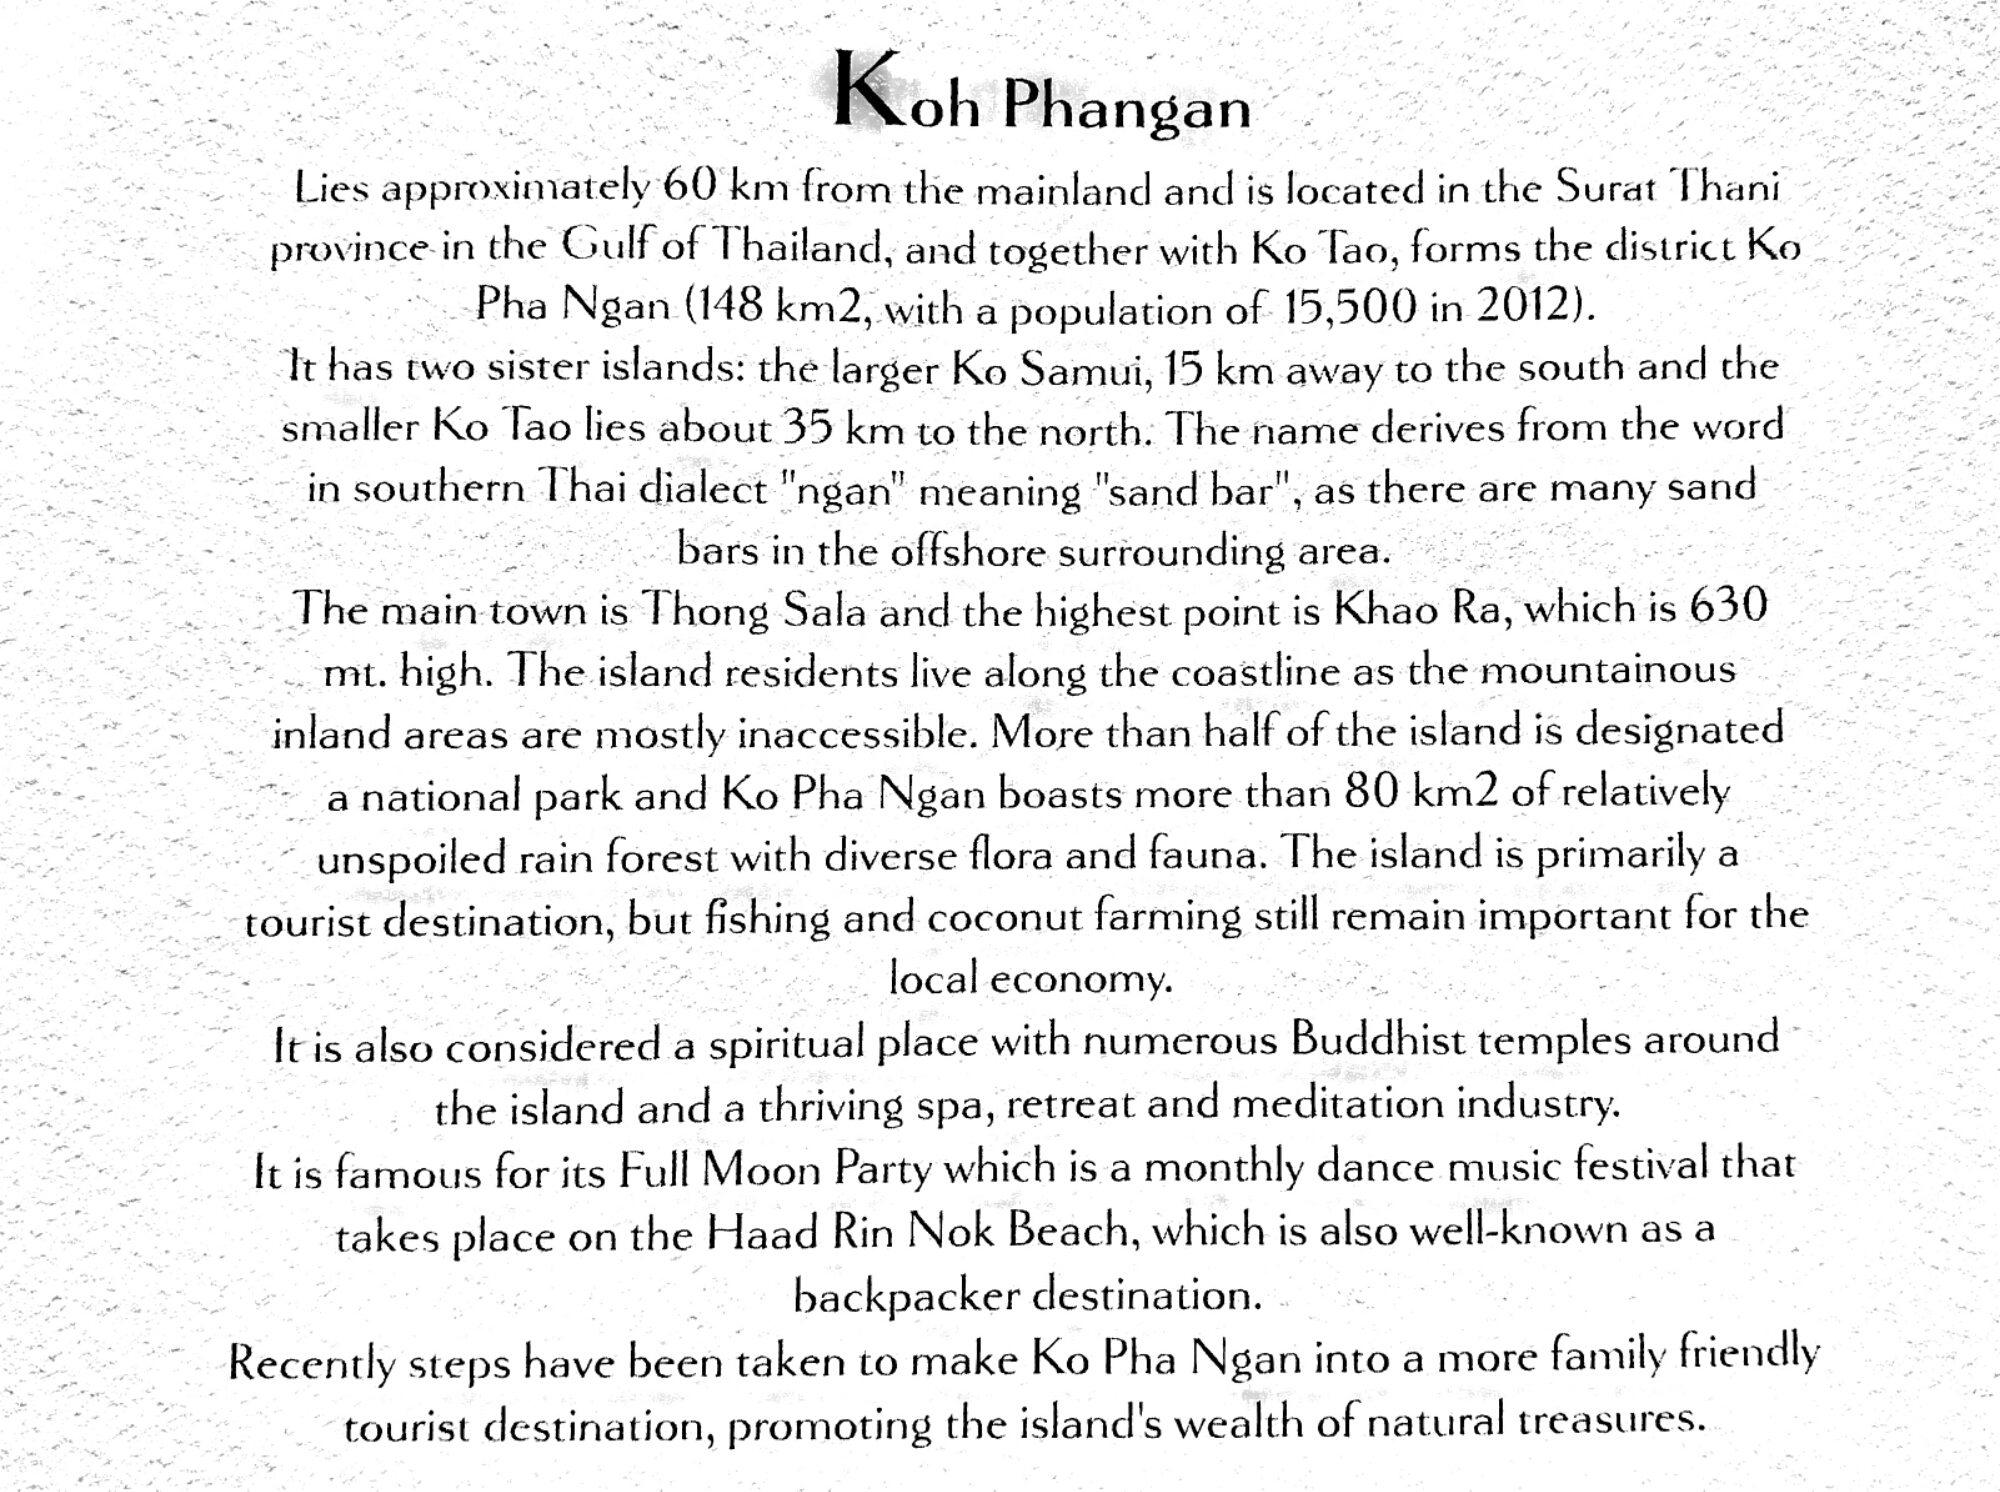 Koh Phangan information